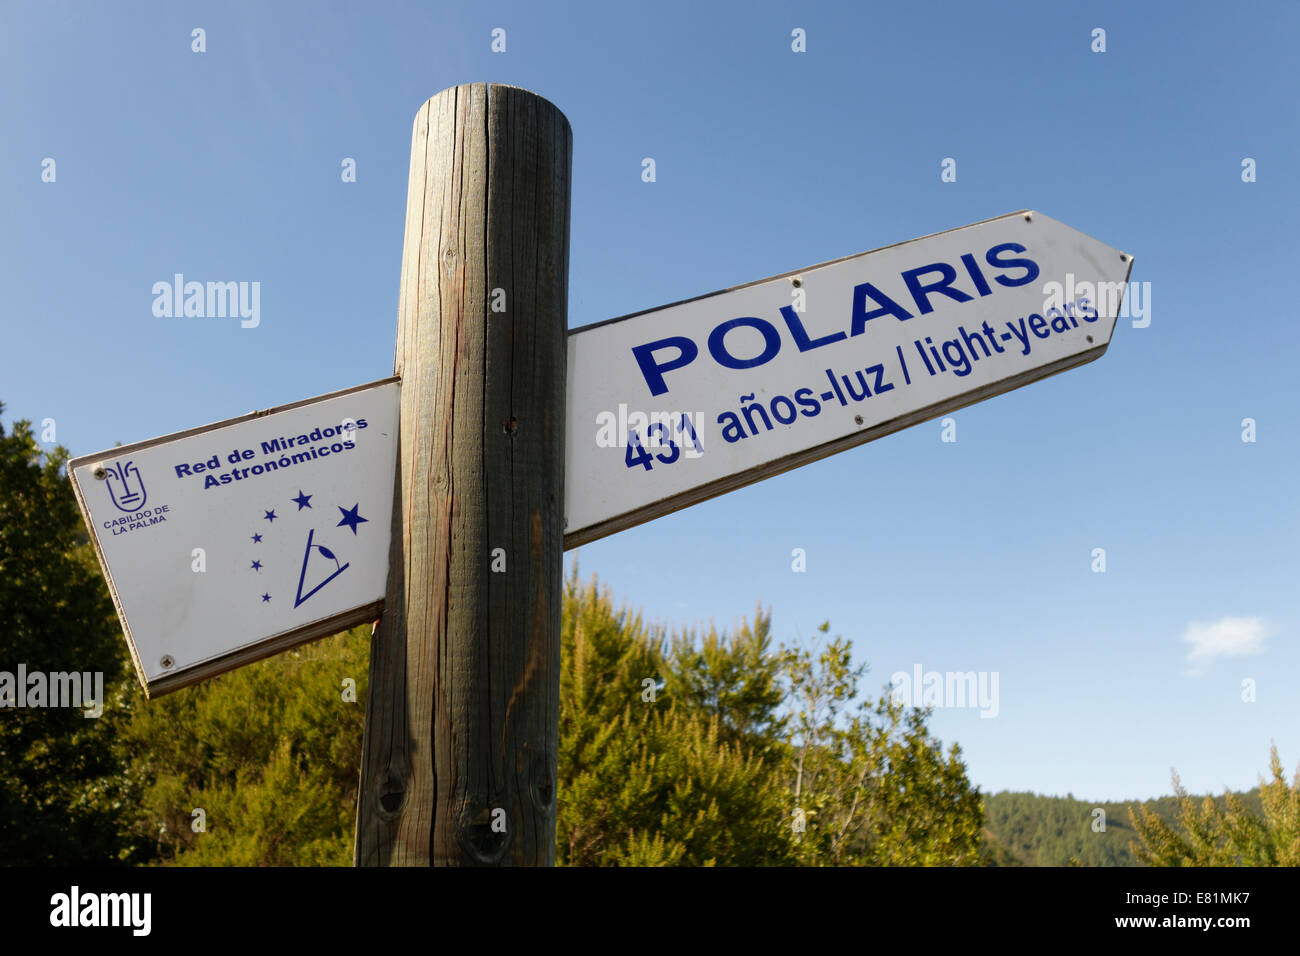 Panneau pointant vers l'étoile polaire, du point de vue astronomique, La Palma, Canary Islands, Spain Banque D'Images